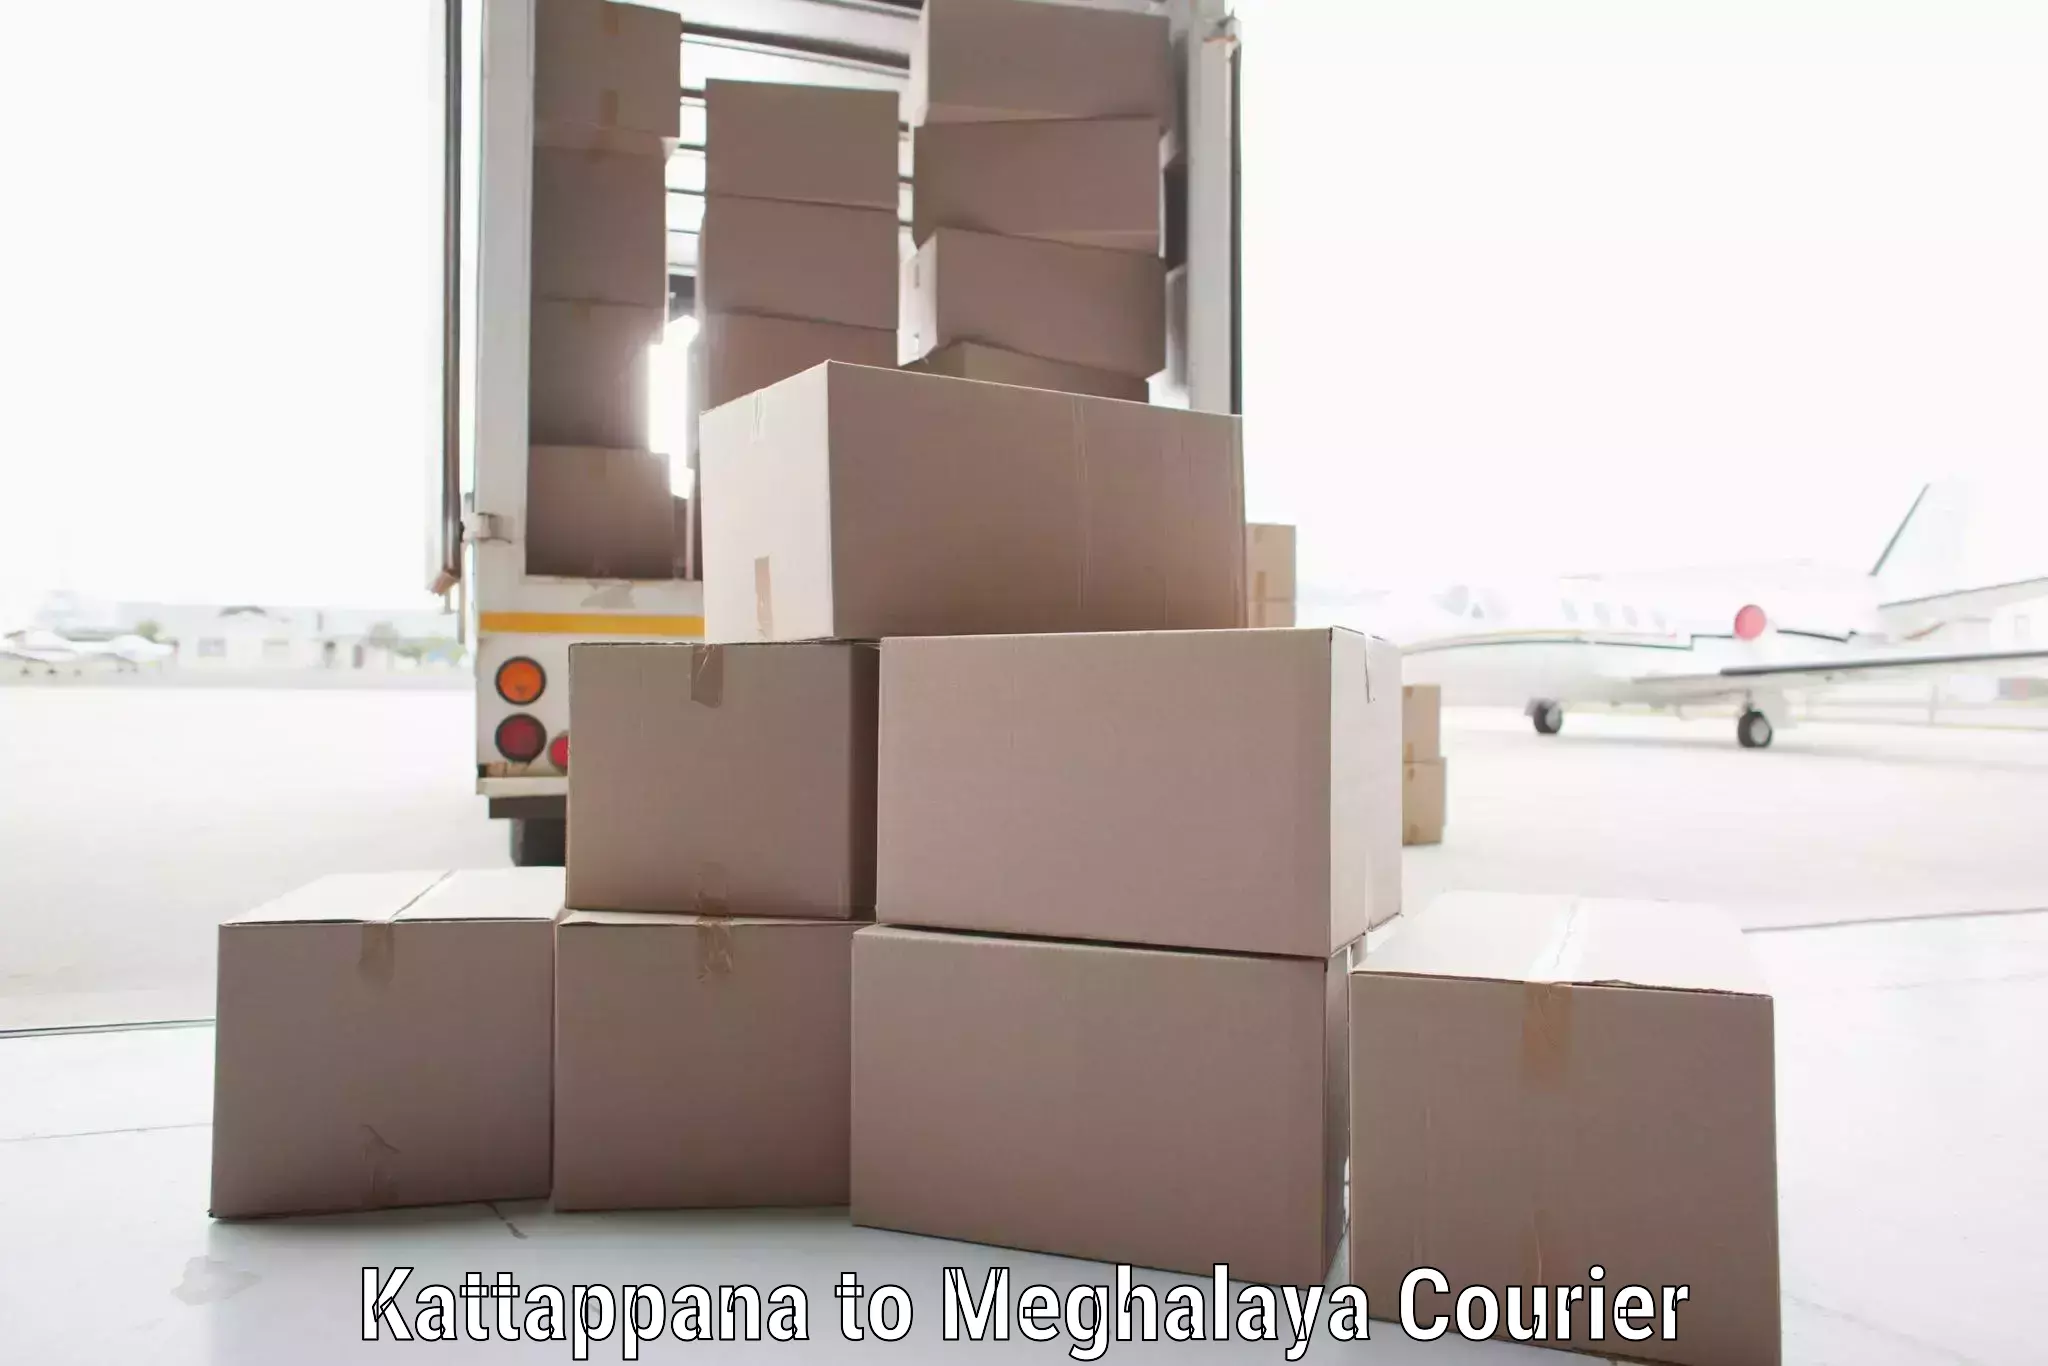 Seamless shipping experience Kattappana to Tura